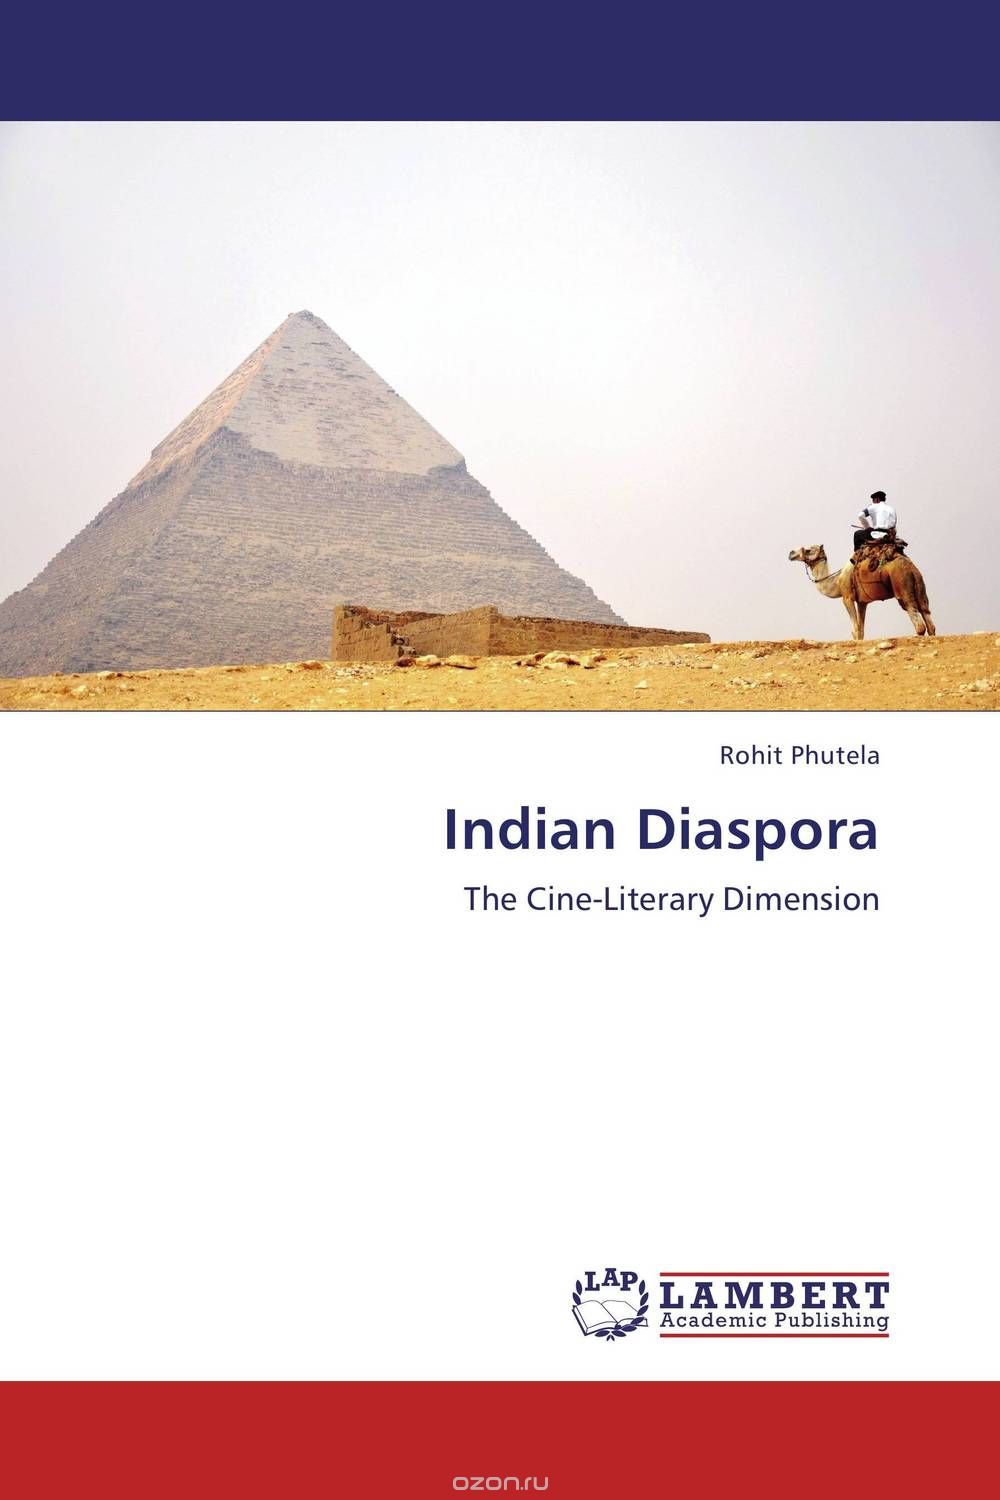 Скачать книгу "Indian Diaspora"